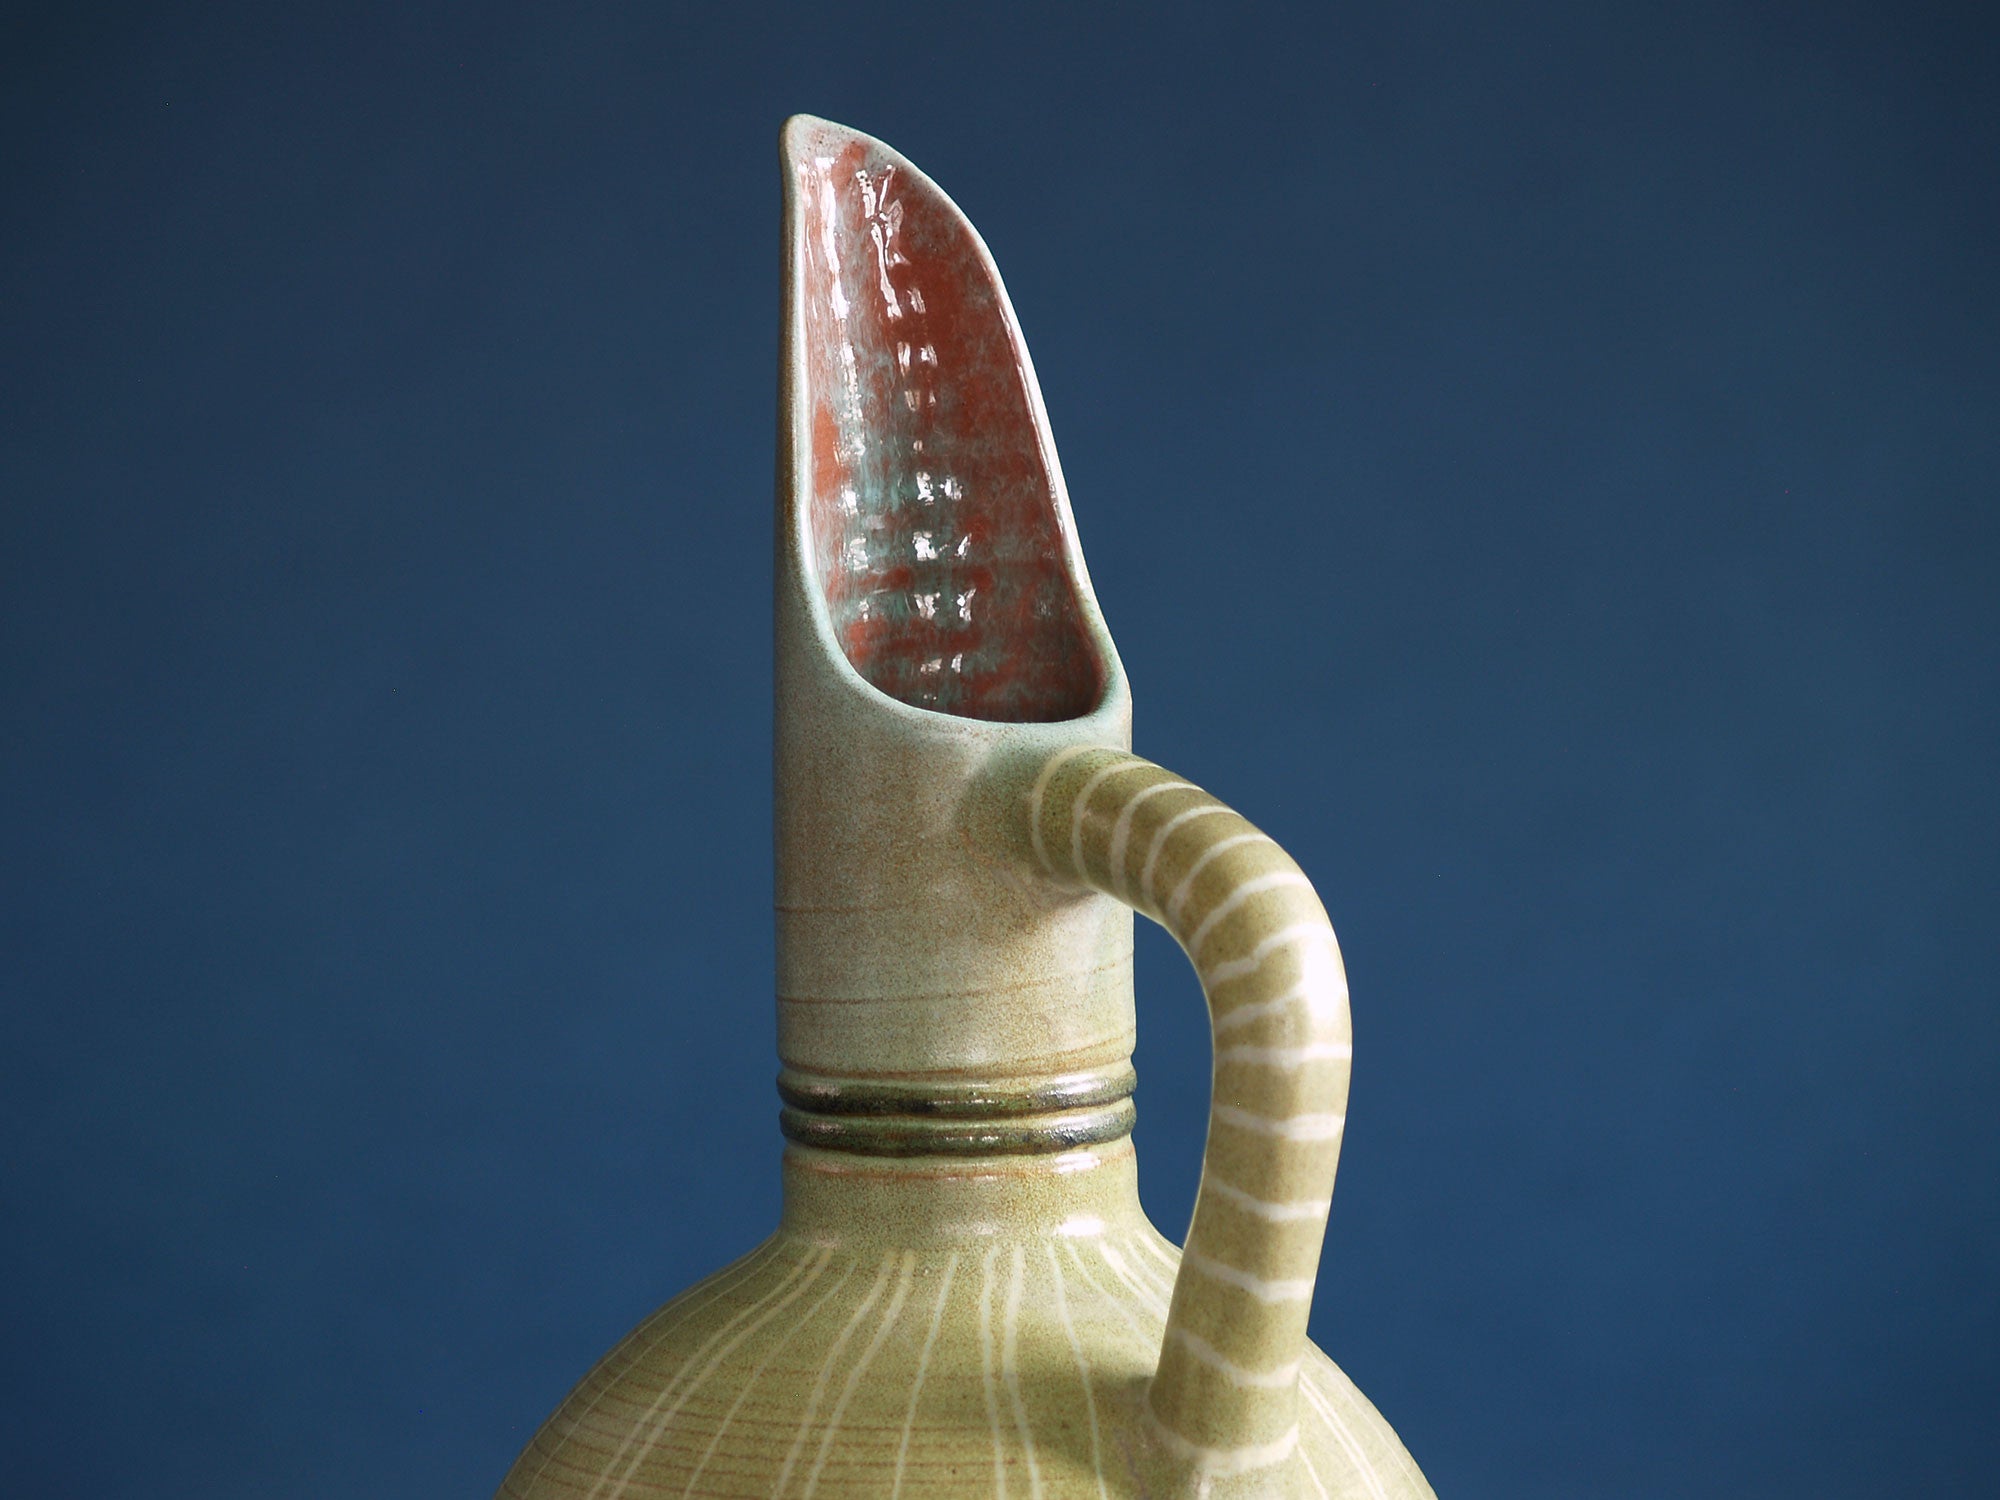 Vase Horus de Fernand Lacaf, France (1957)..Horus vase by Fernand Lacaf, France (1957)